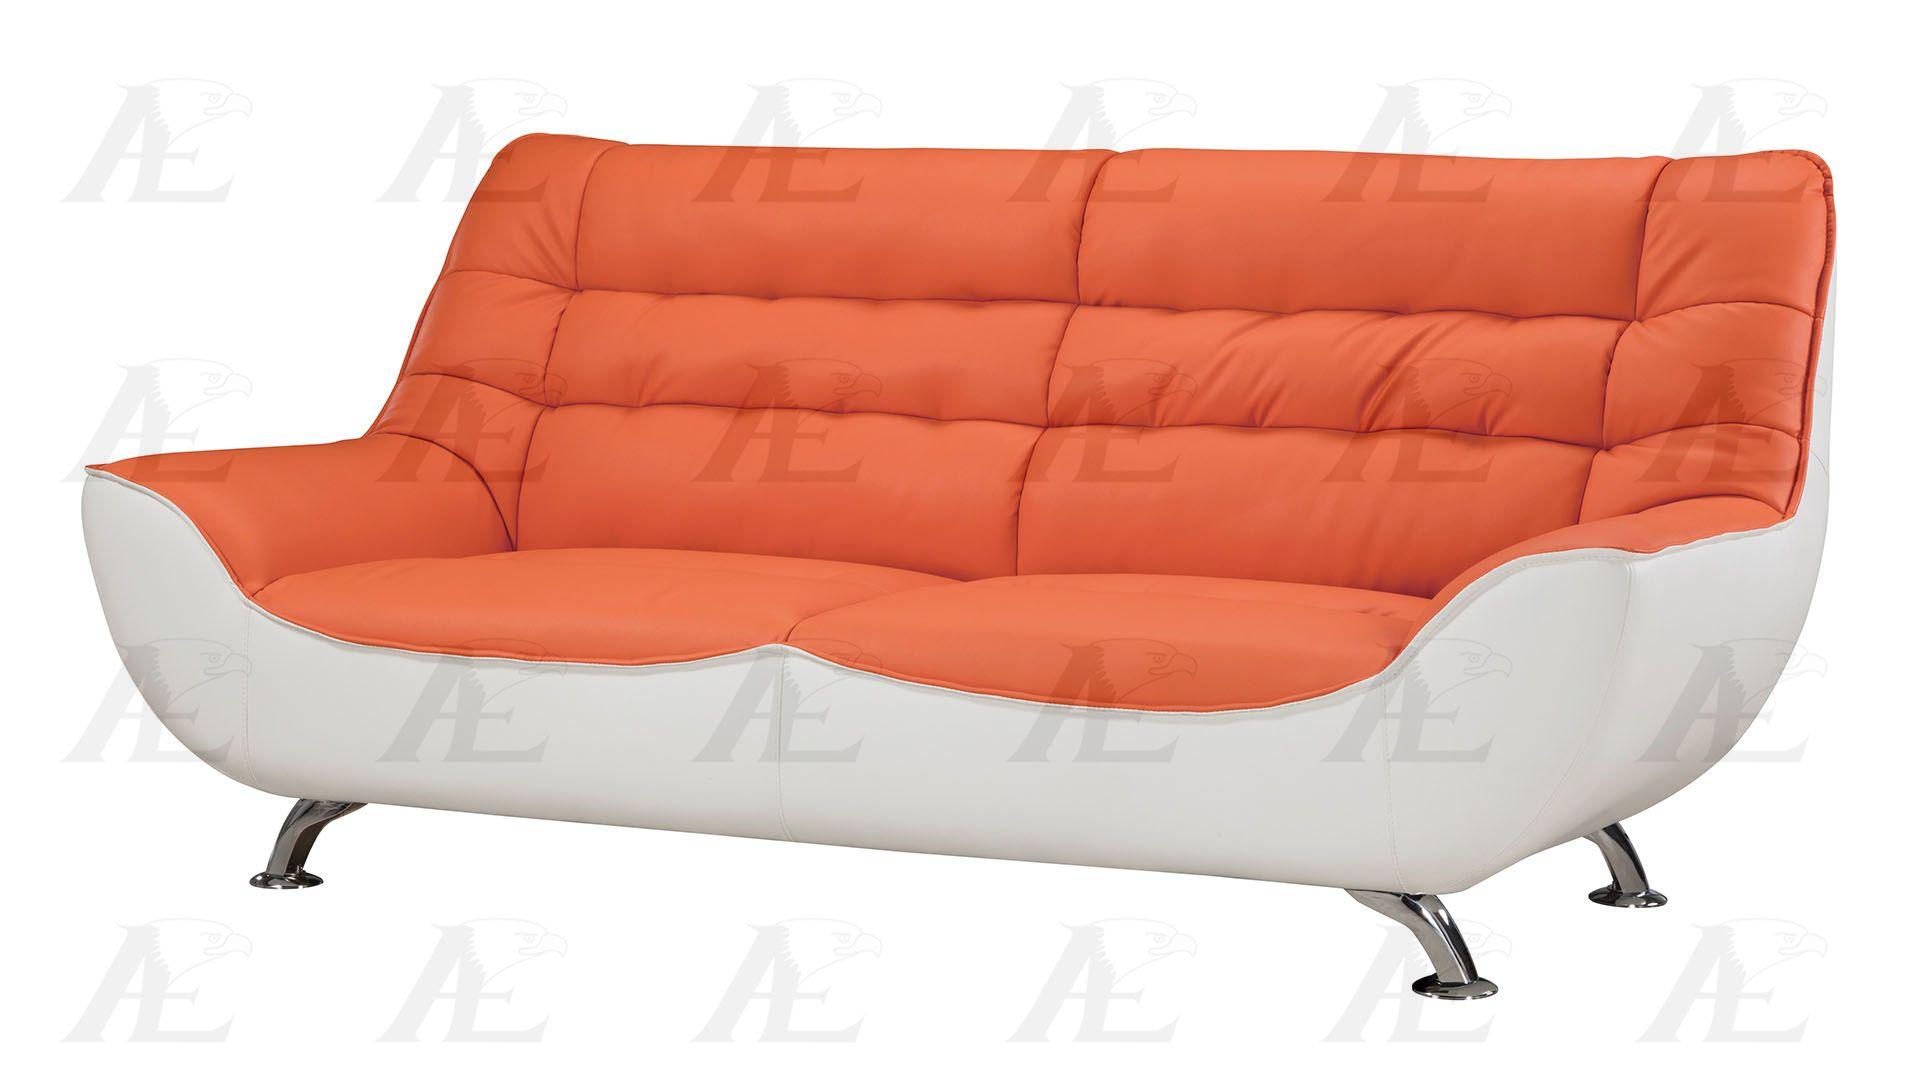 Modern Sofa AE612-ORG.W AE612-ORG.W in Orange, White Bonded Leather